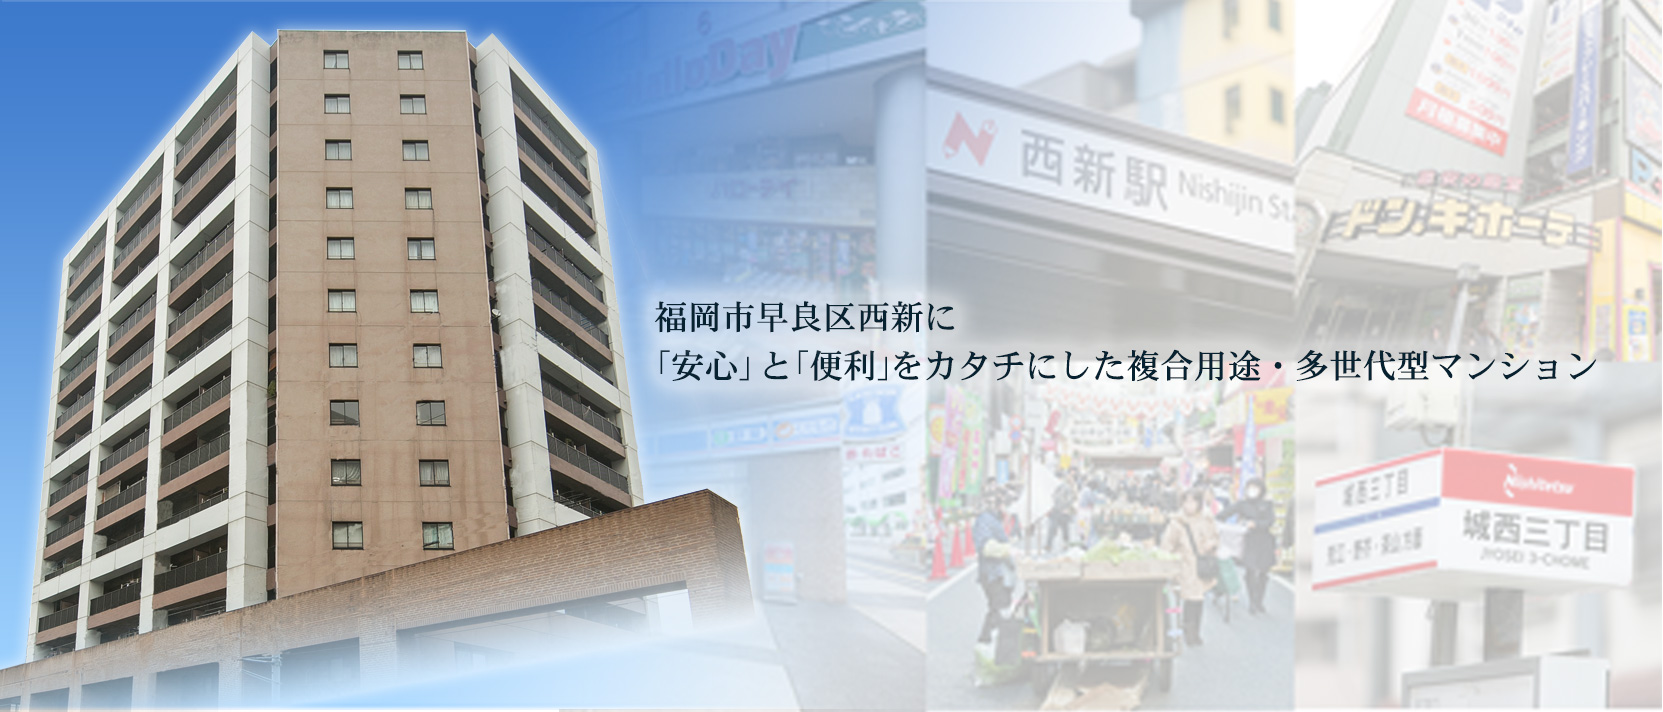 歴史と文化が息づく街、東区箱崎松原に「安心」と「便利」を形にした集合住宅